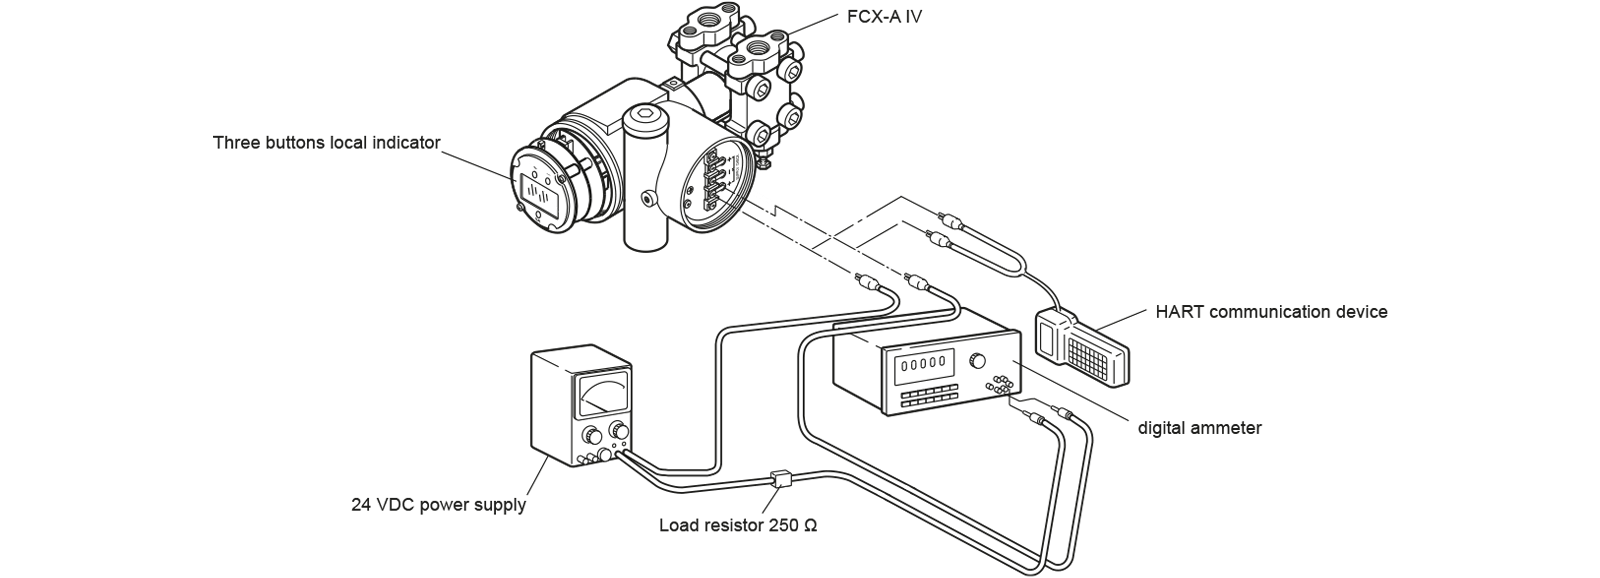 esquema do material necessário para e calibração do transmissor de pressão - pt